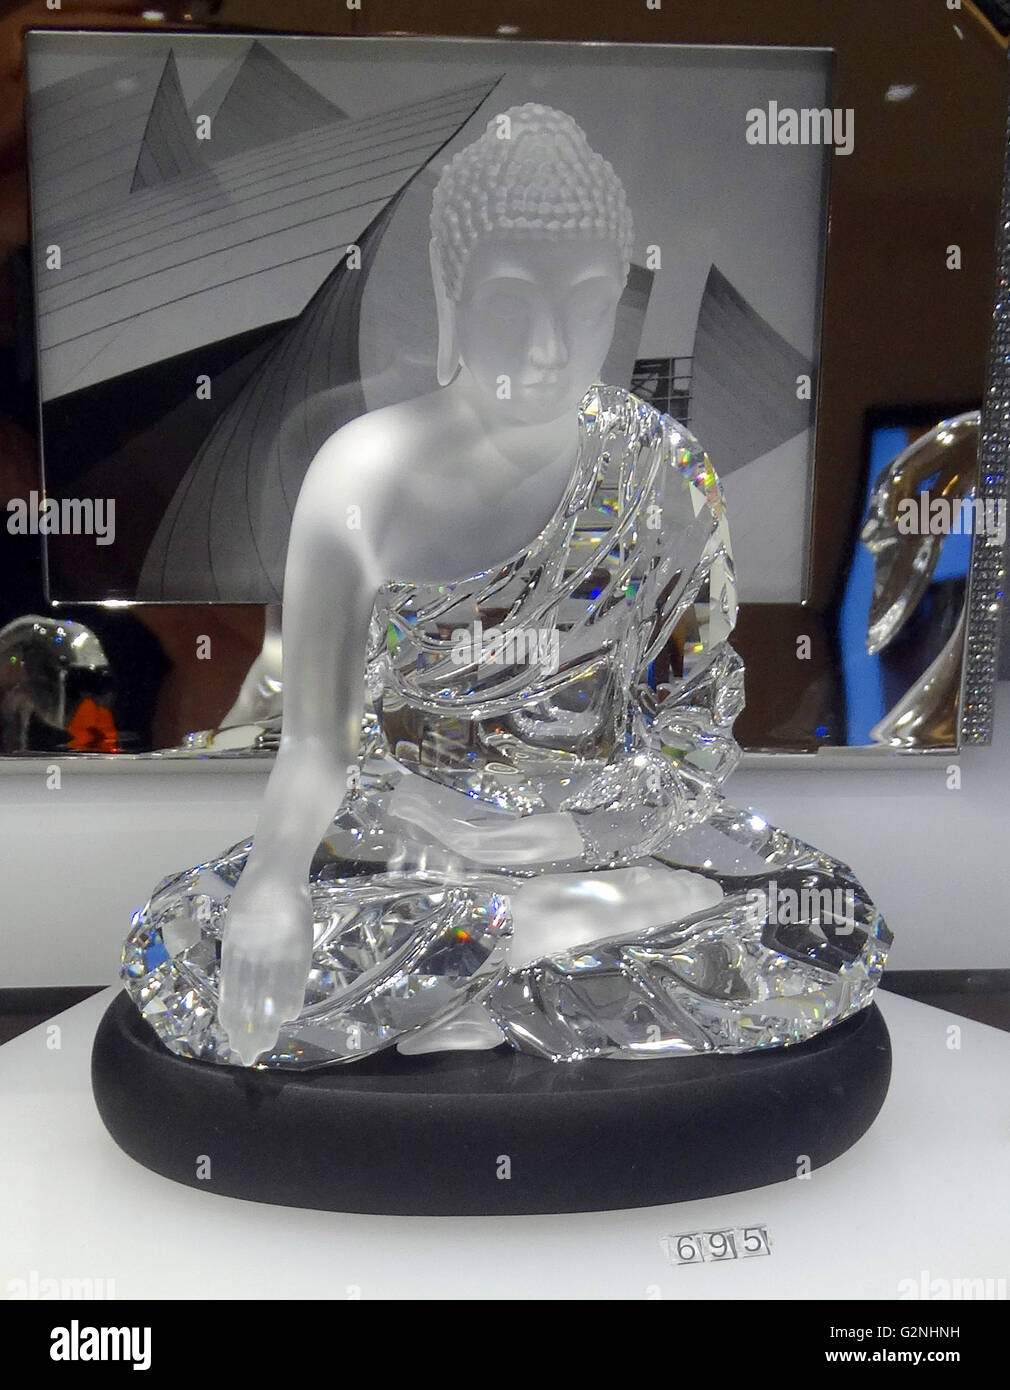 Swarovski Crystal Bouddha assis. Swarovski est un producteur autrichien de luxe couper verre au plomb. Fondé par Daniel Swarovski (1862-1956). Datée 2014 Banque D'Images